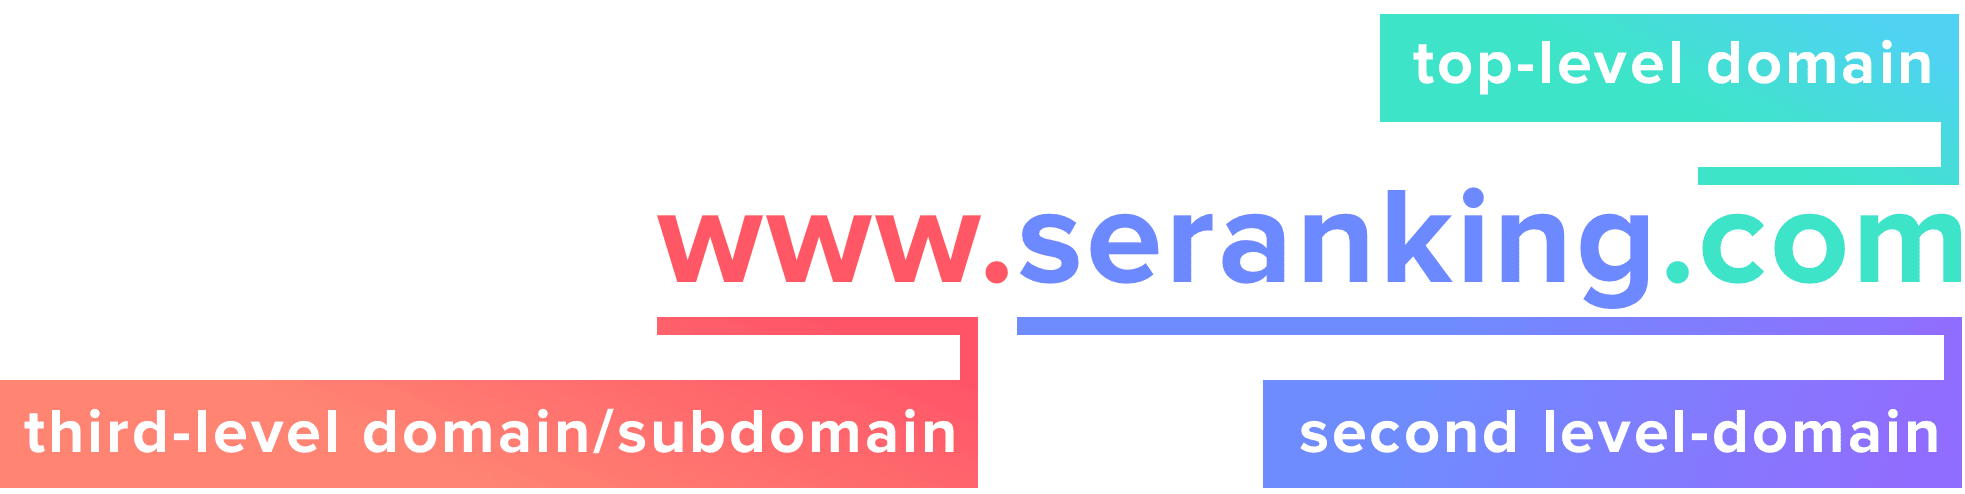 www-seranking-com-ドメイン構造